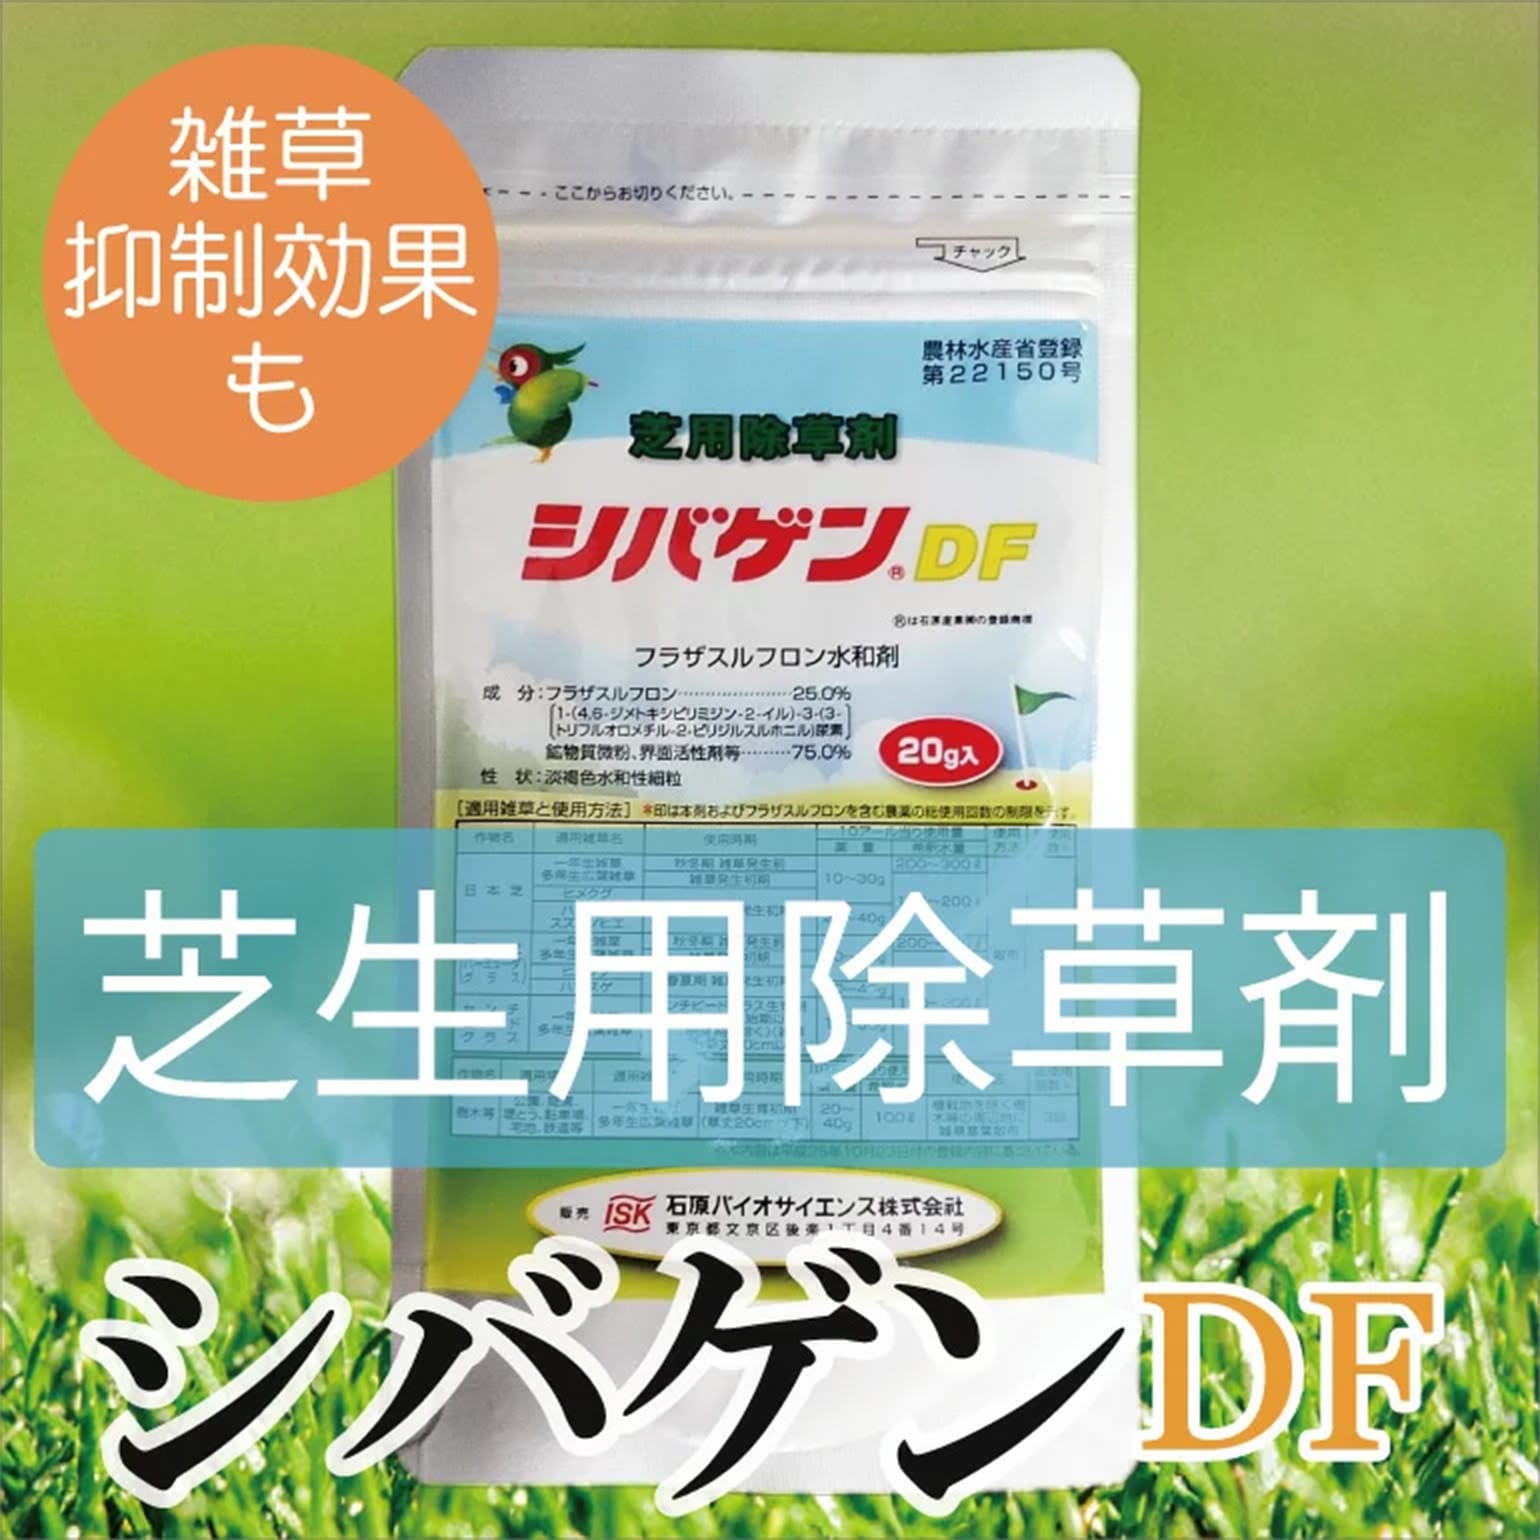 芝生 肥料 殺菌剤 西洋芝用 薬剤セット :manureset-01:サンワ